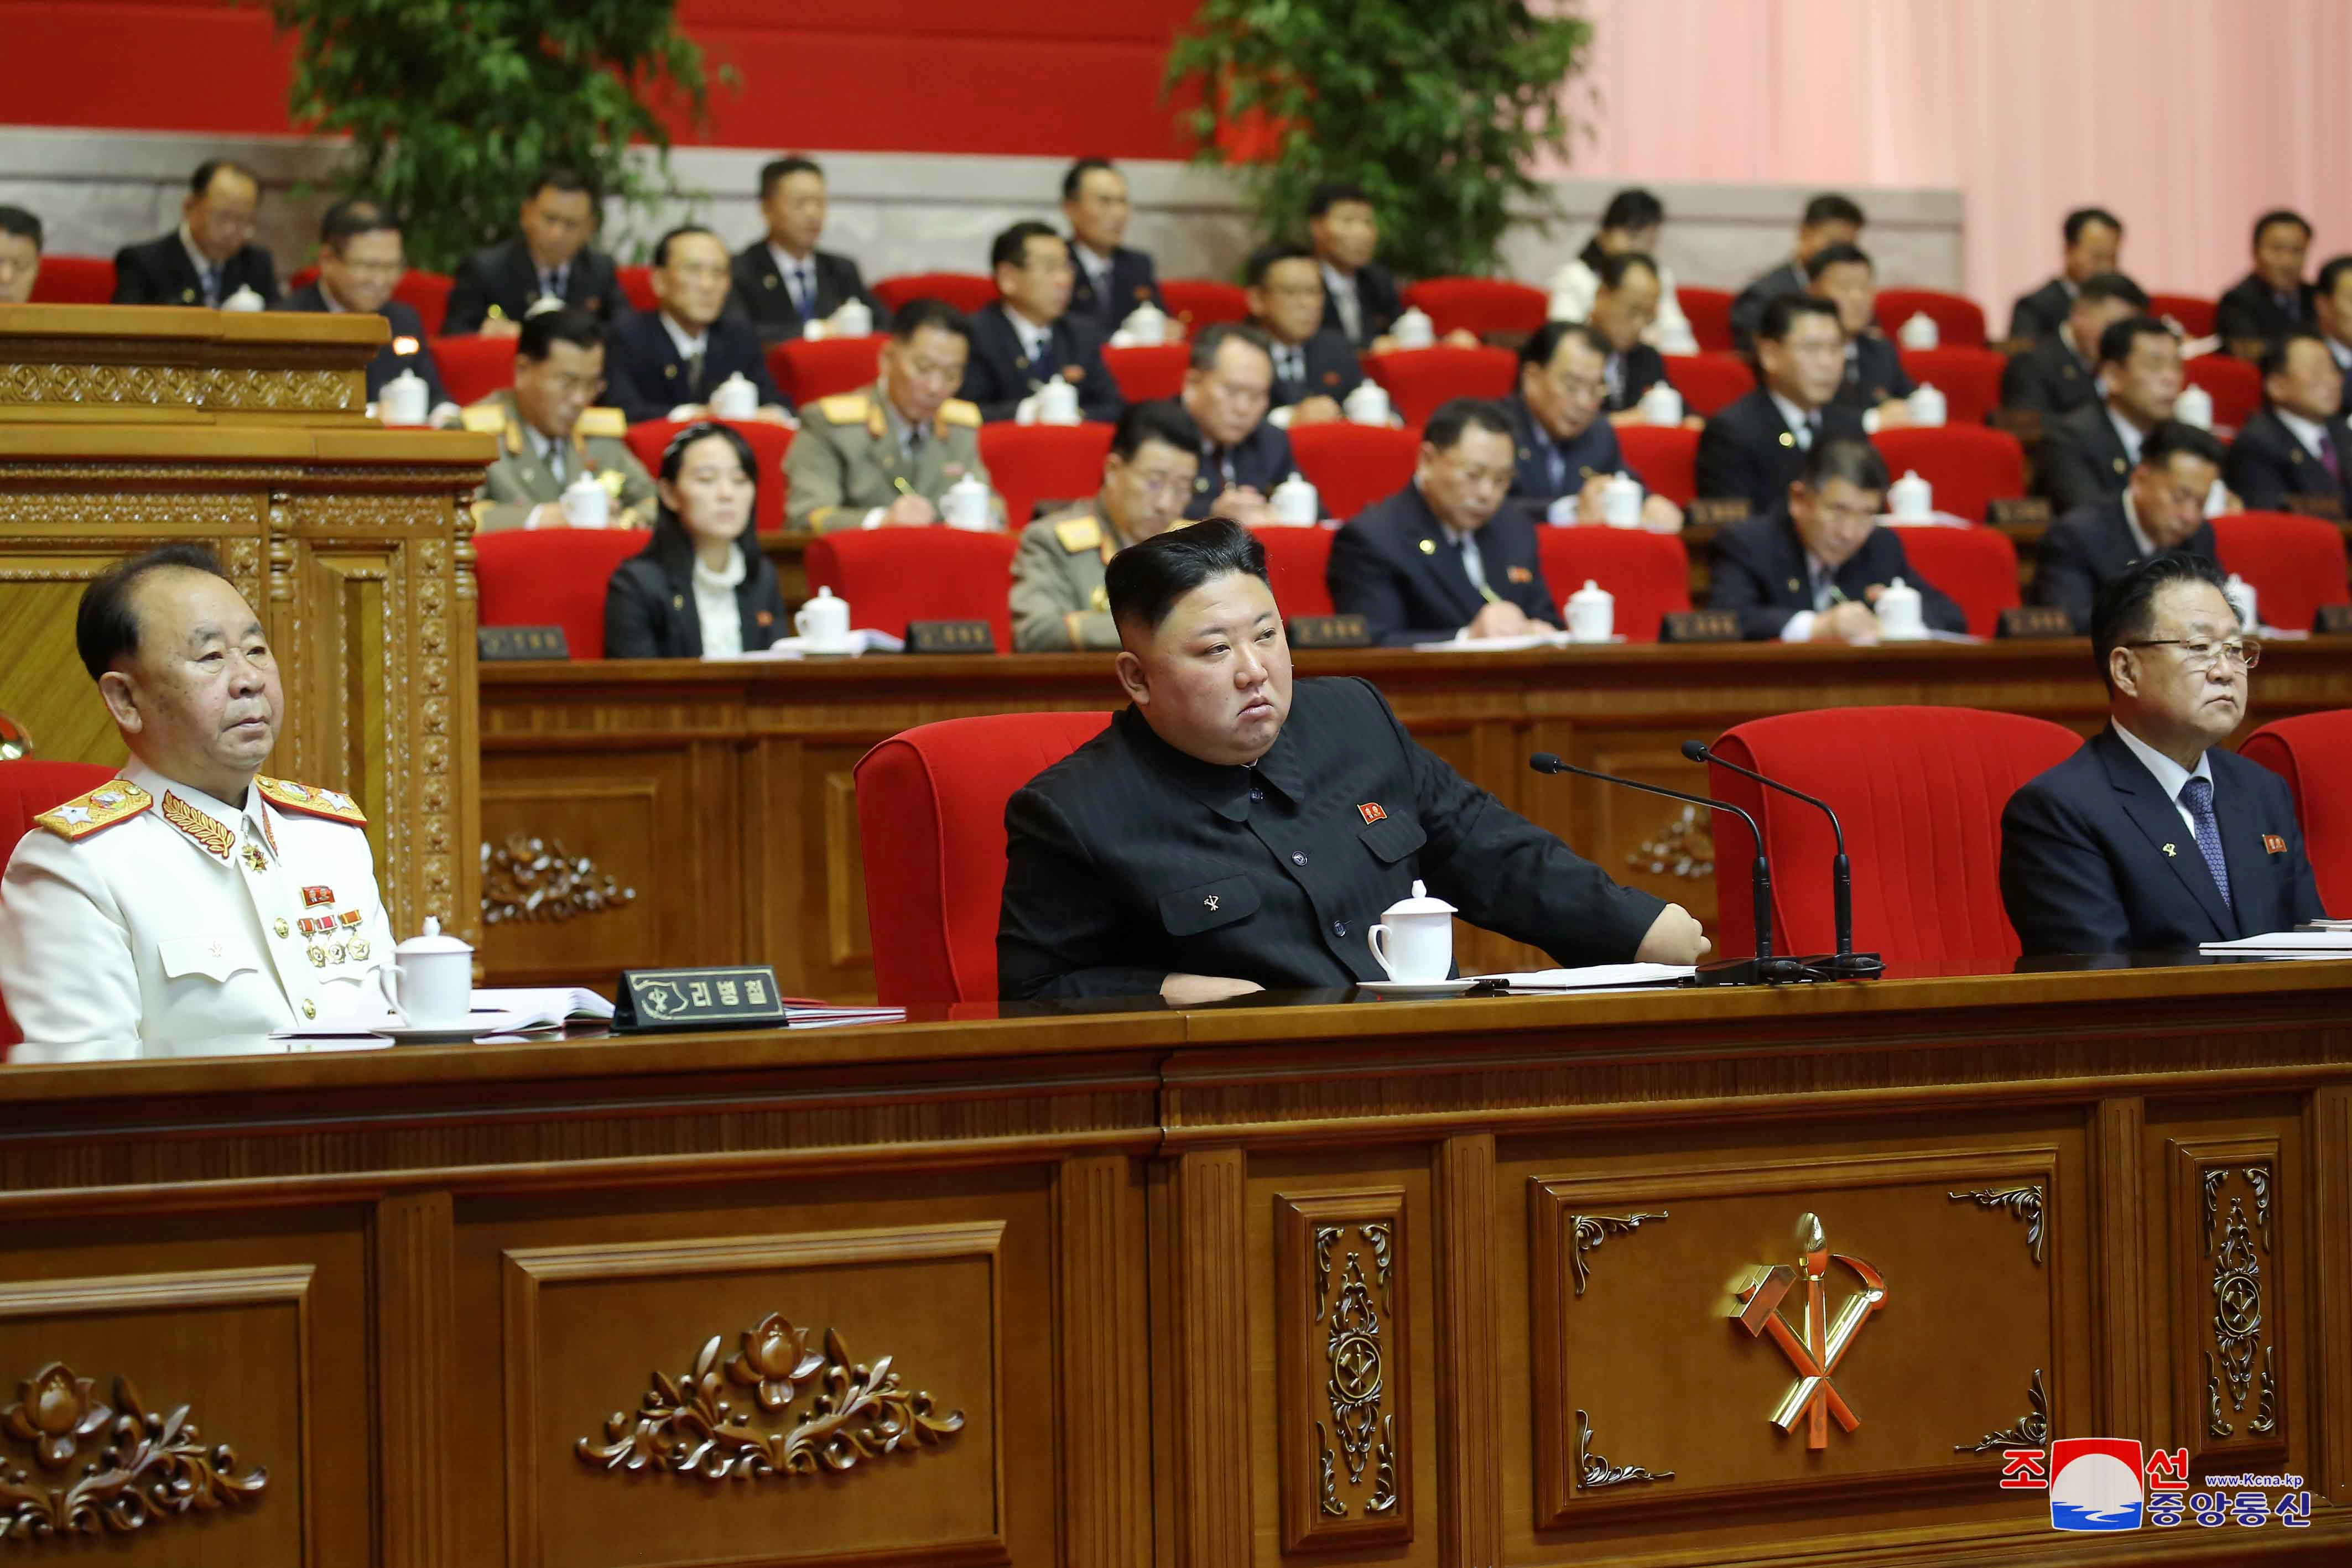 El dictador norcoreano Kim Jong-un asiste al 8 ° Congreso del Partido de los Trabajadores en Pyongyang, Corea del Norte. Detrás puede verse a su hermana, Kim Yo-jong (Reuters)